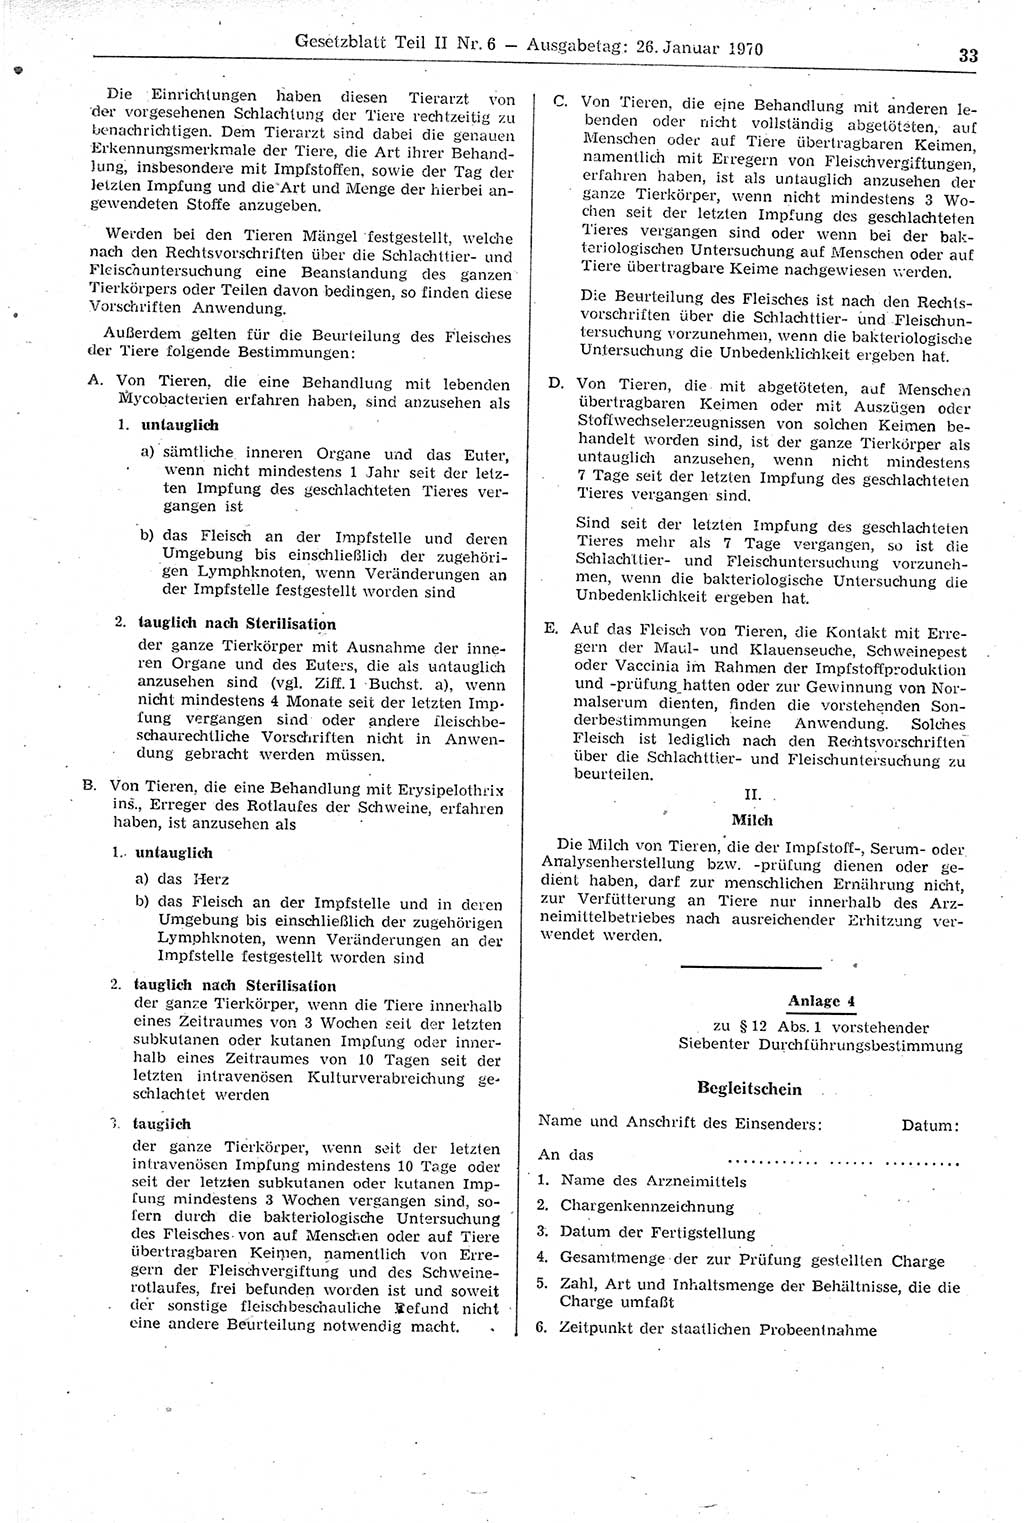 Gesetzblatt (GBl.) der Deutschen Demokratischen Republik (DDR) Teil ⅠⅠ 1970, Seite 33 (GBl. DDR ⅠⅠ 1970, S. 33)